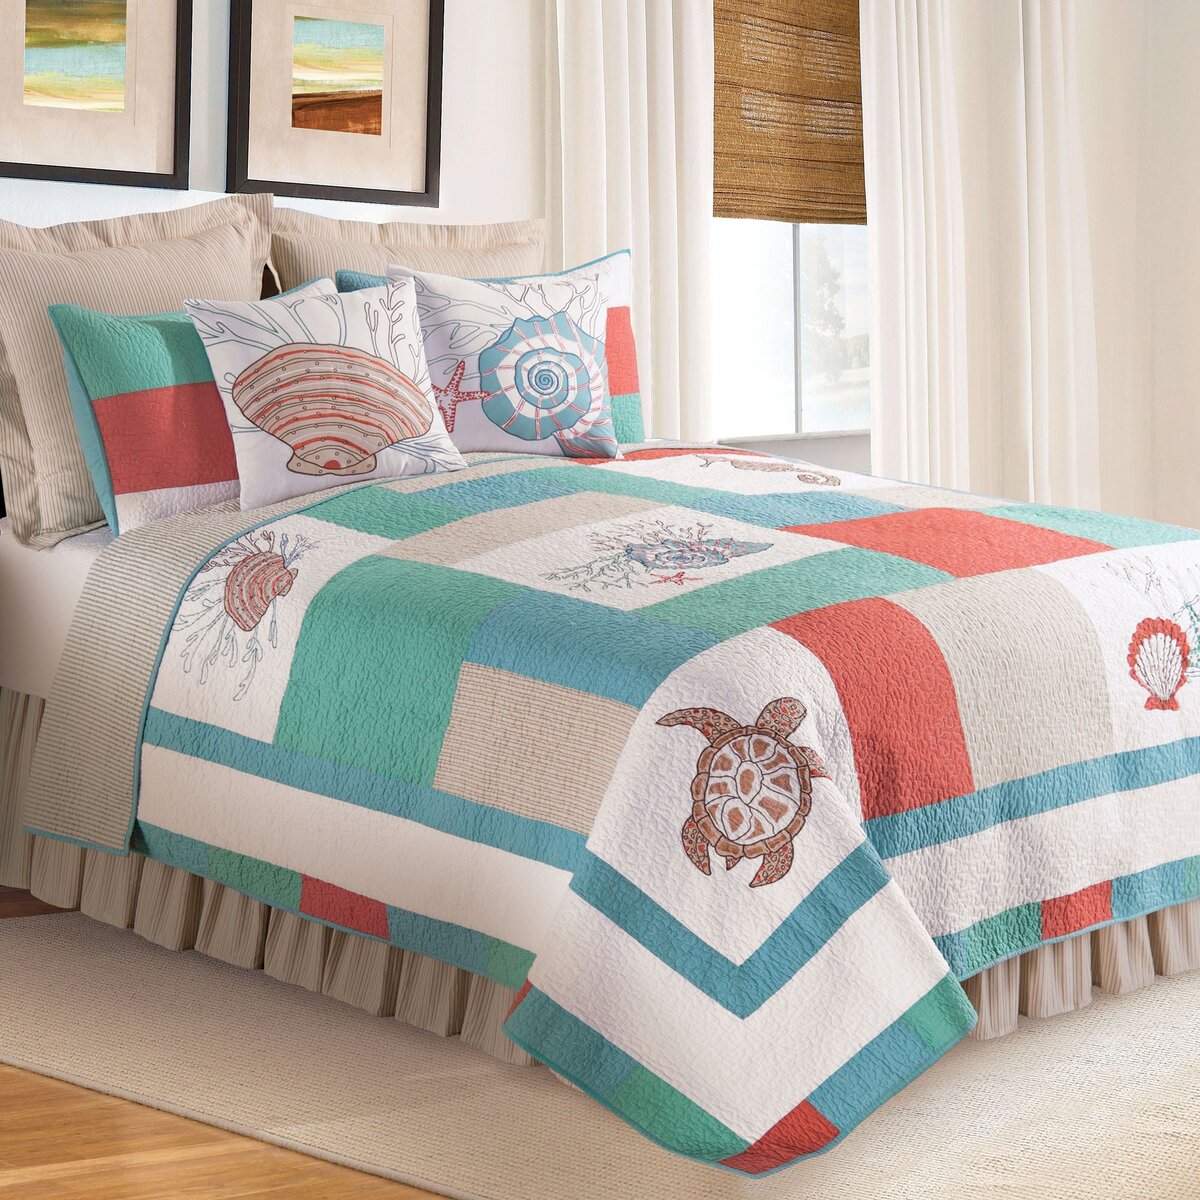 Если вы хотите сшить оригинальный спальный комплект, то первый вопрос, который стоит решить: сколько нужно метров ткани на постельное белье.-2